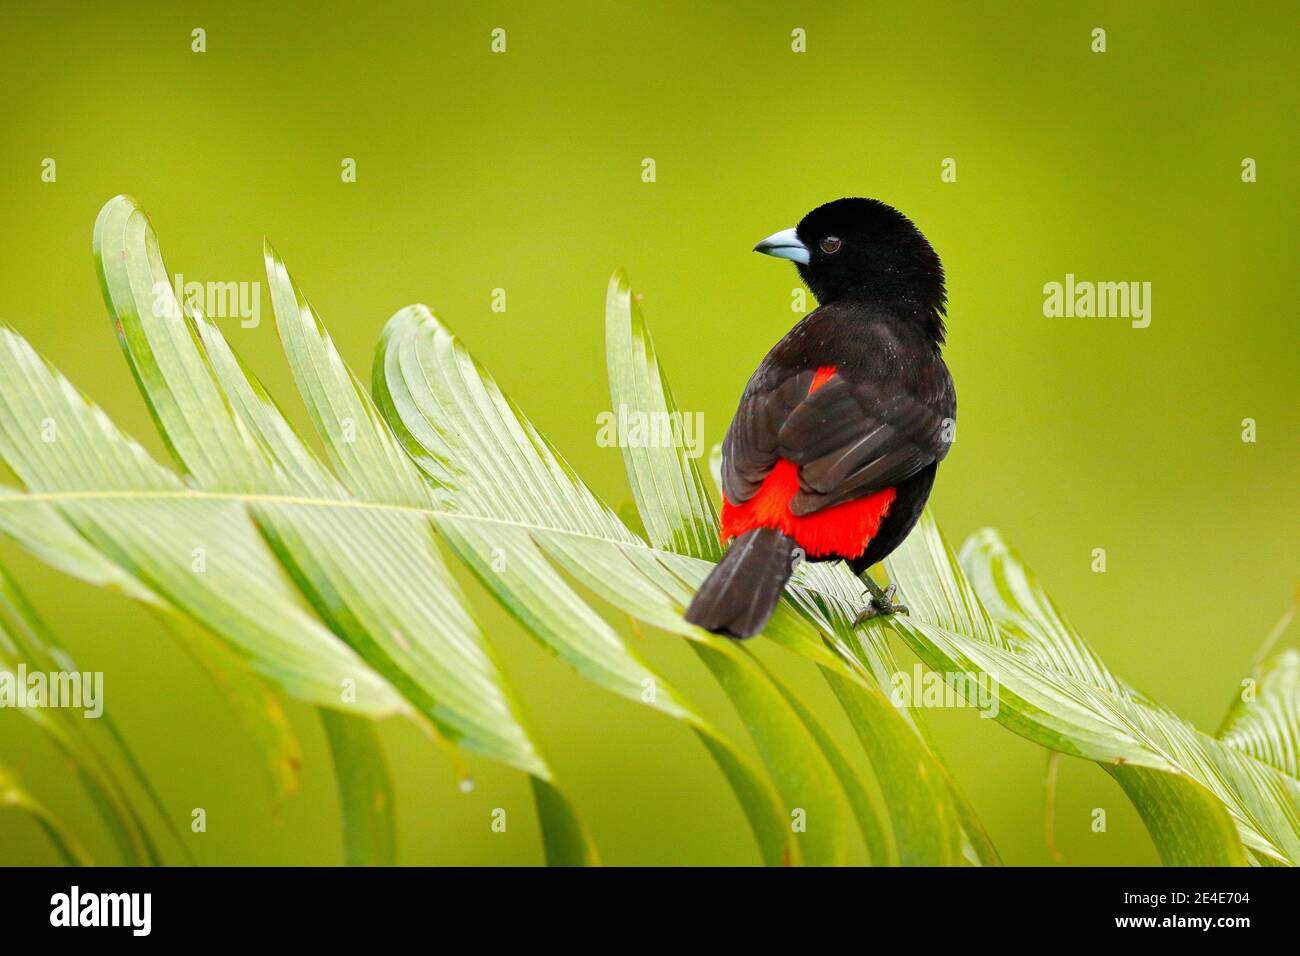 Tanager, Ramphocelus passerinii, uccello rosso e nero tropicale esotico del Costa Rica, in habitat naturale verde della foresta. Canzone nera e rossa Foto Stock